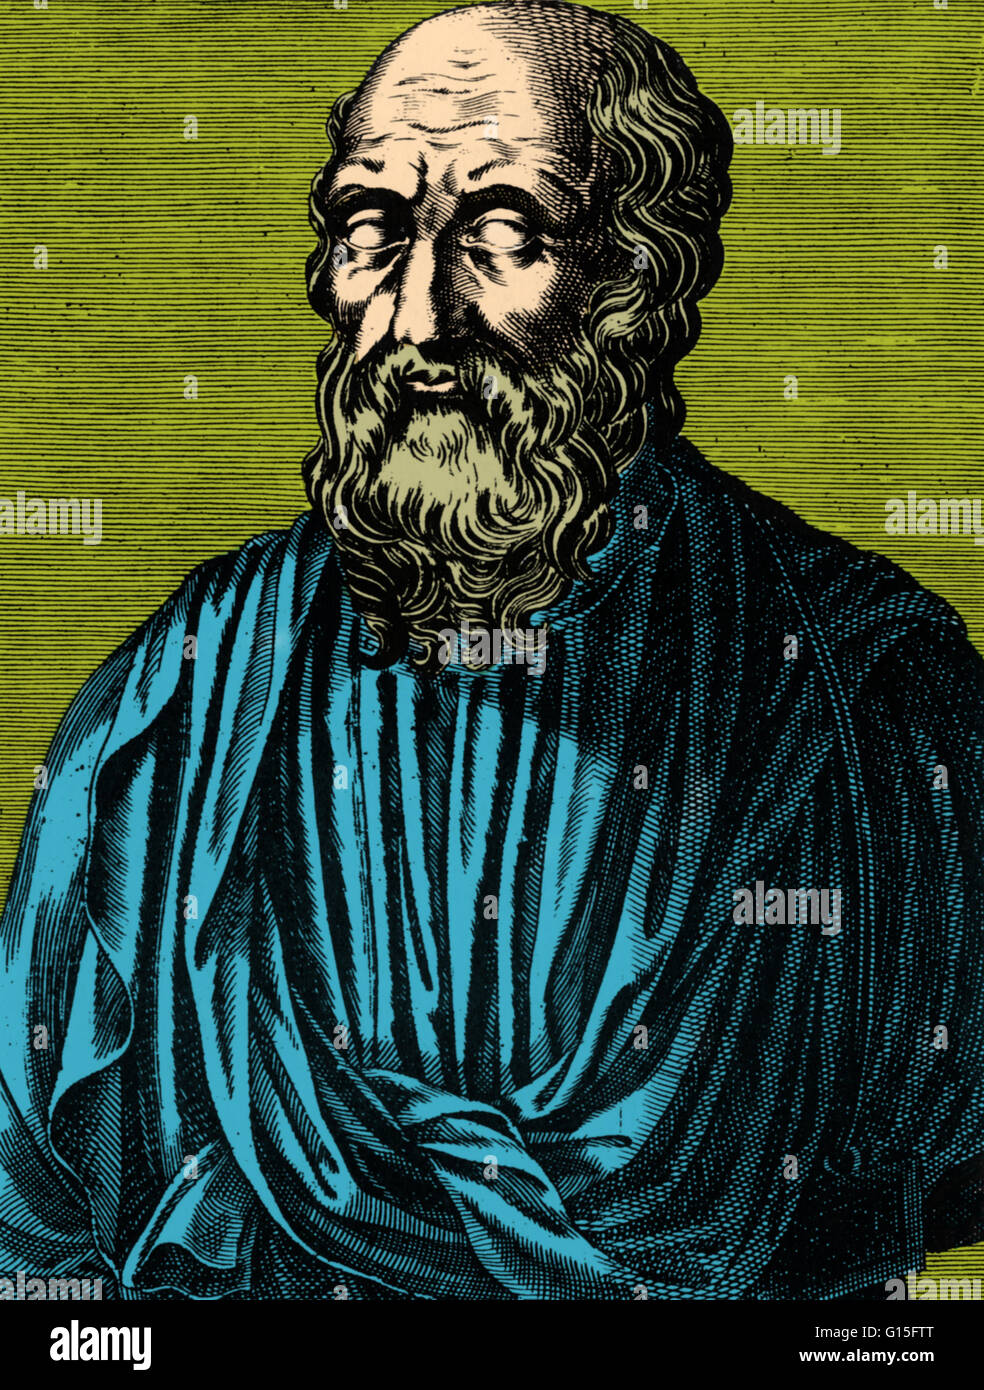 Platon (424/423-348/347 BC) war ein klassischer griechischer Philosoph, Mathematiker, Schüler des Sokrates, Verfasser der philosophischen Dialoge und Gründer der Akademie in Athen, die erste Institution der höheren Bildung in der westlichen Welt. Zusammen mit seinem mentor Stockfoto